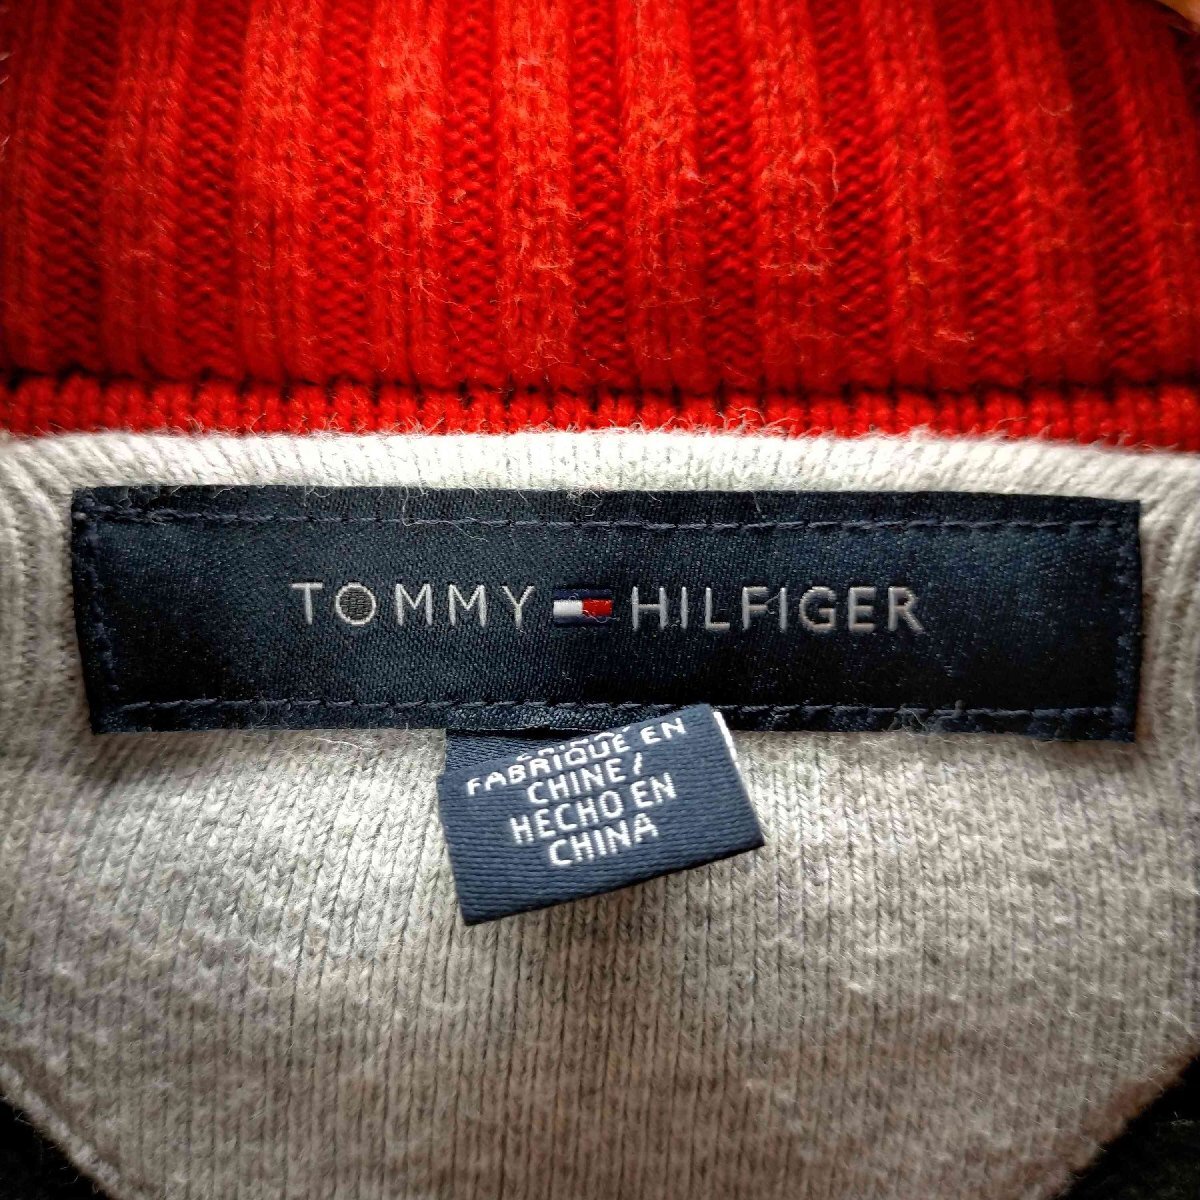 TOMMY HILFIGER(トミーヒルフィガー) ハーフジップ ドライバーズニット メンズ import 中古 古着 0747_画像6